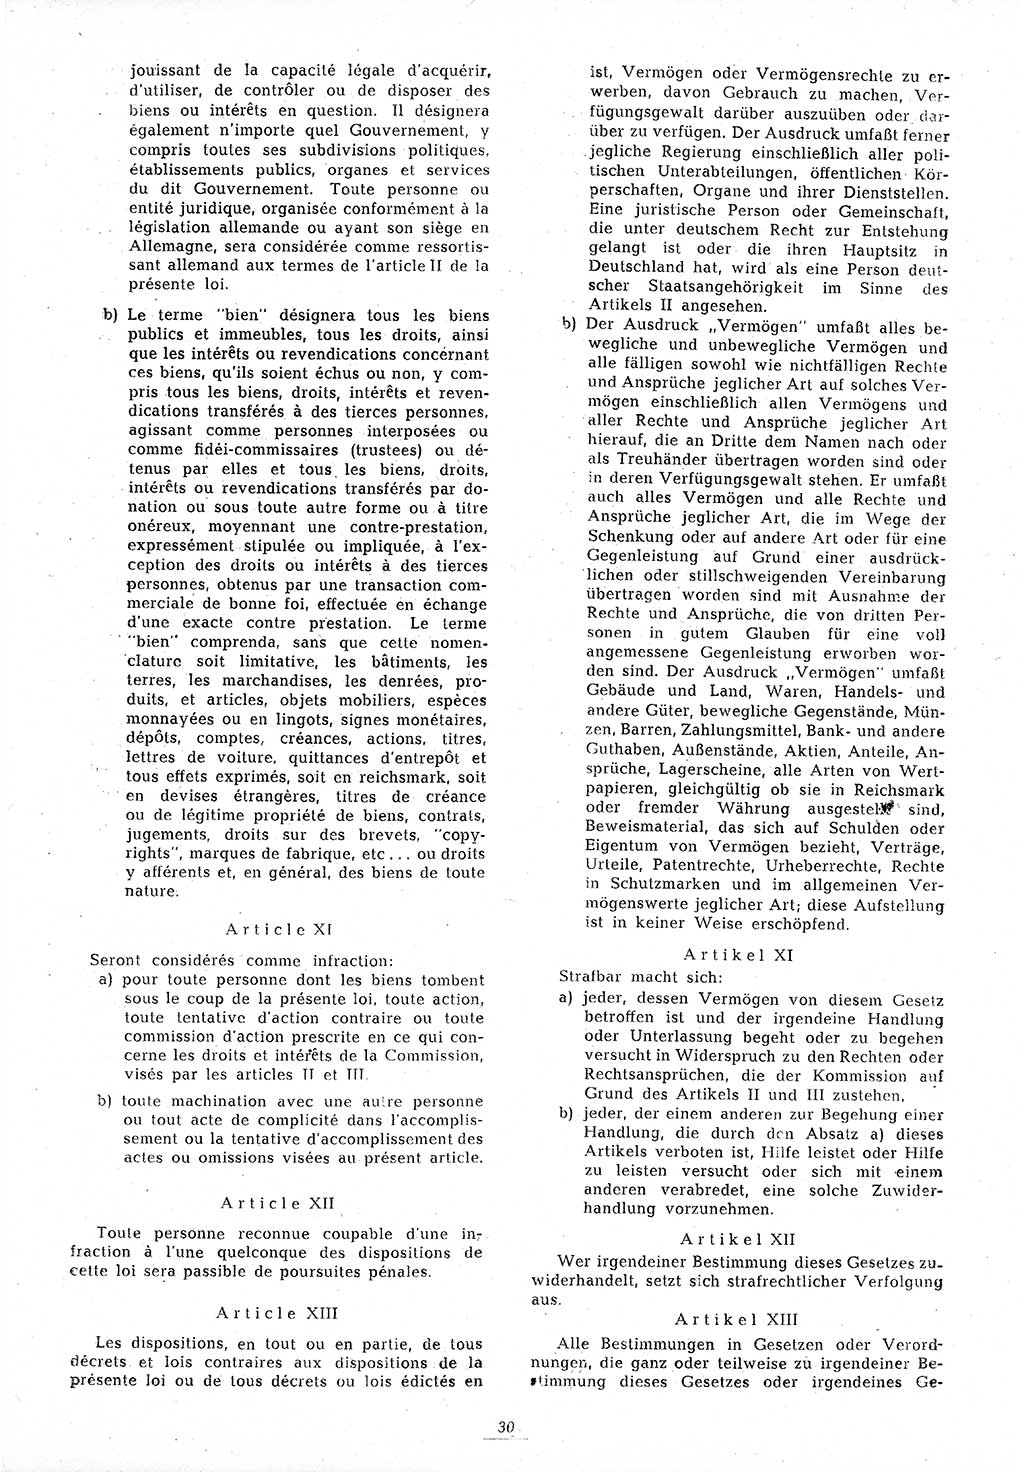 Amtsblatt des Kontrollrats (ABlKR) in Deutschland 1945, Seite 30/2 (ABlKR Dtl. 1945, S. 30/2)